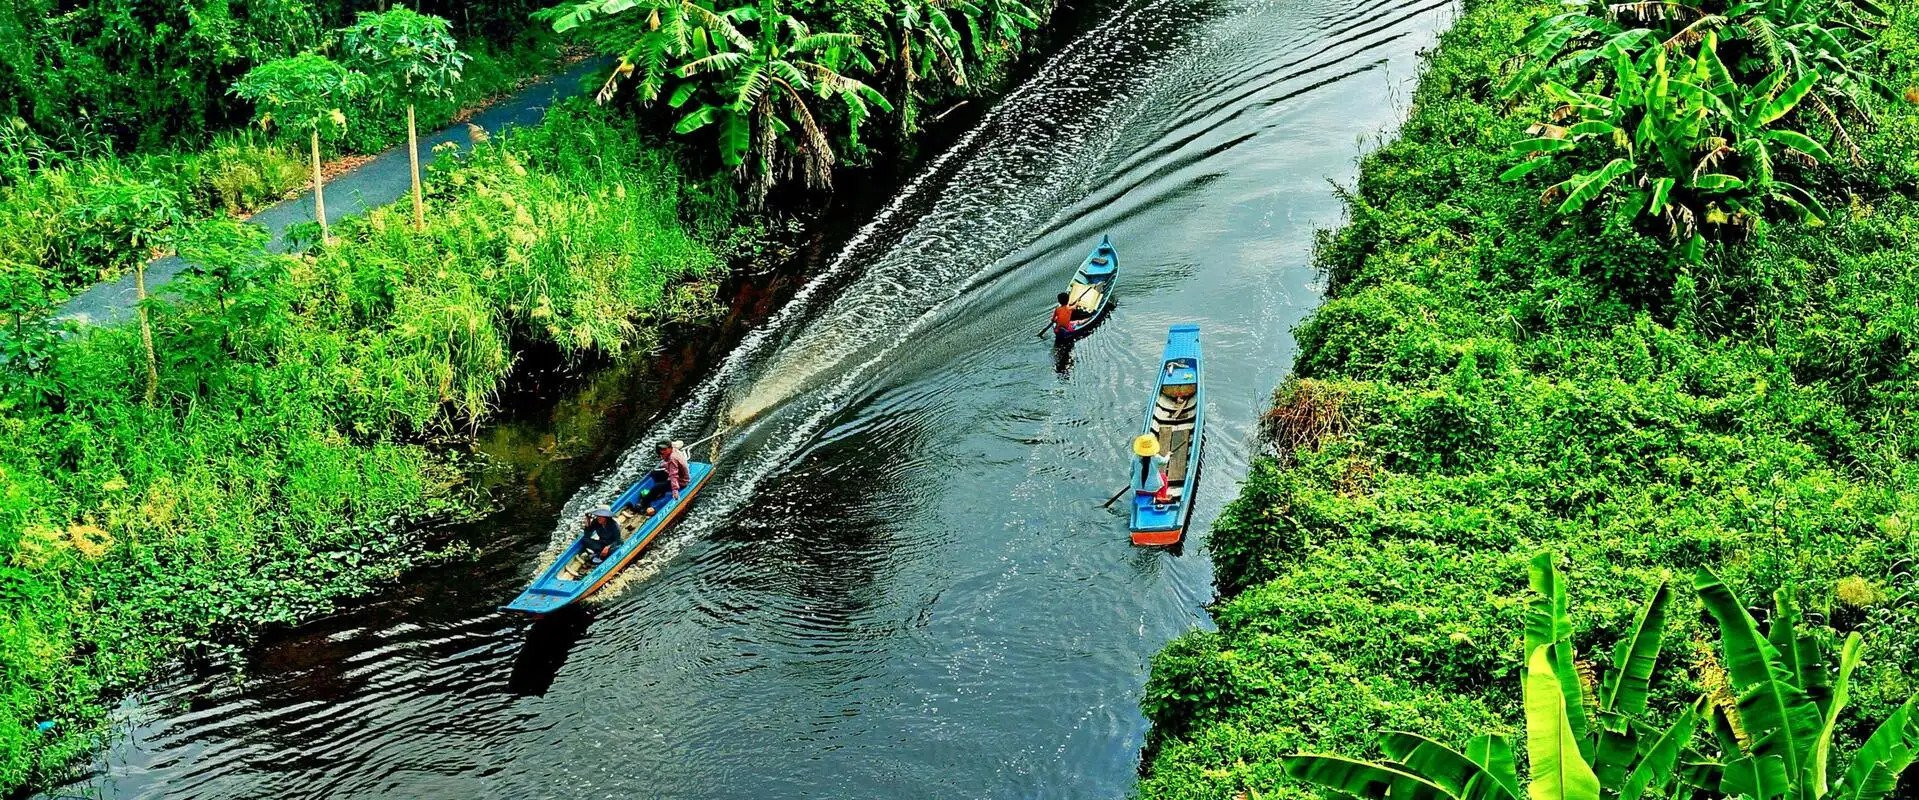 Trải nghiệm tham quan bằng thuyền ở rừng U Minh Hạ